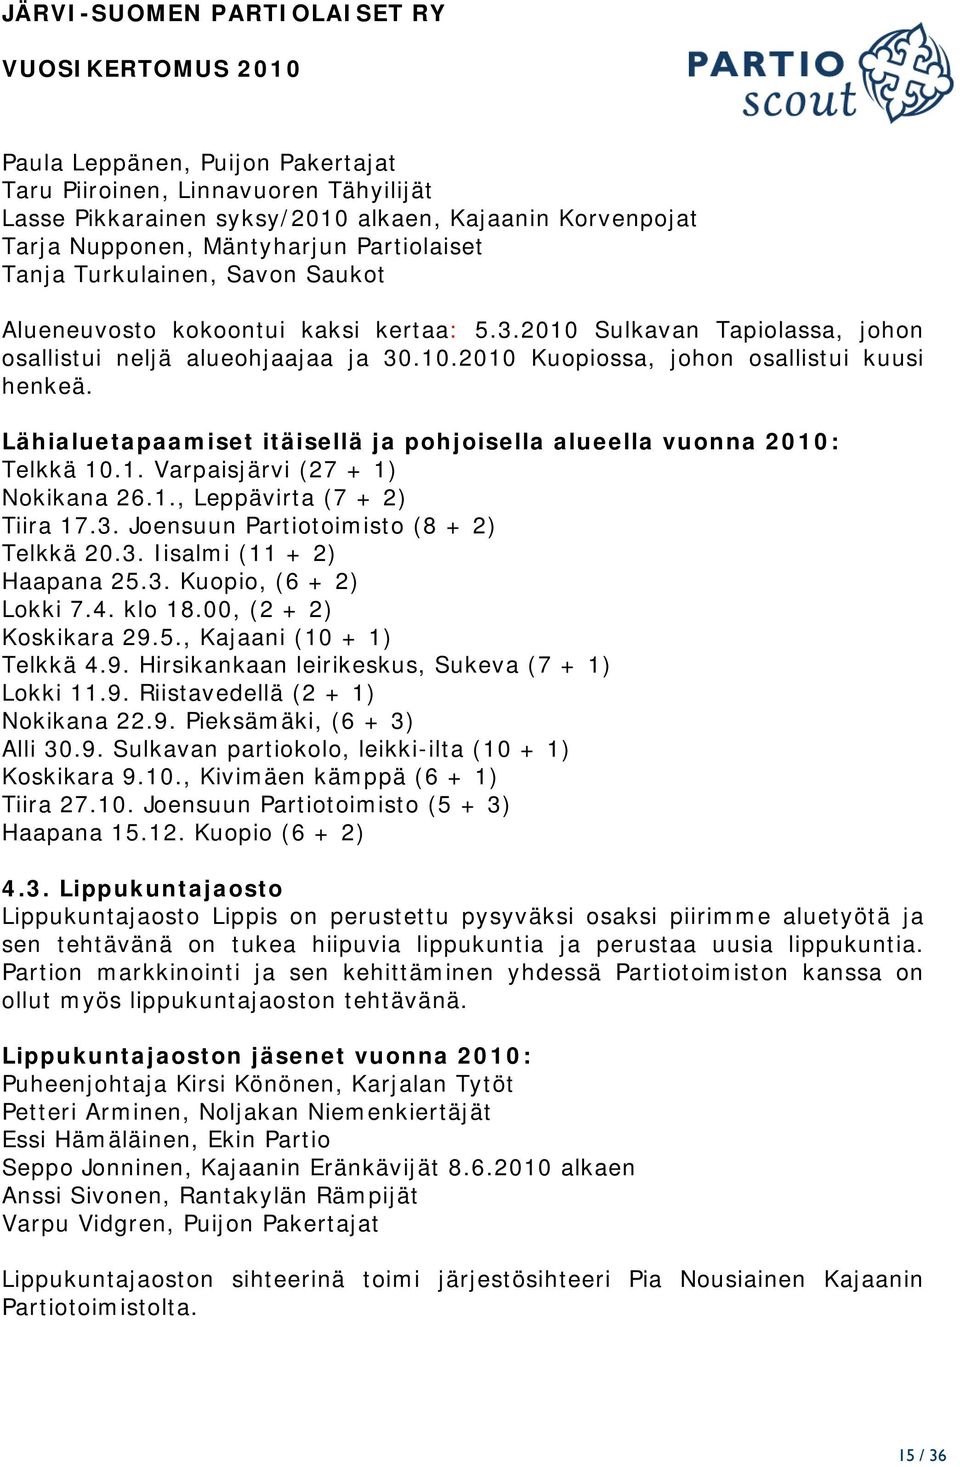 Lähialuetapaamiset itäisellä ja pohjoisella alueella vuonna 2010: Telkkä 10.1. Varpaisjärvi (27 + 1) Nokikana 26.1., Leppävirta (7 + 2) Tiira 17.3. Joensuun Partiotoimisto (8 + 2) Telkkä 20.3. Iisalmi (11 + 2) Haapana 25.